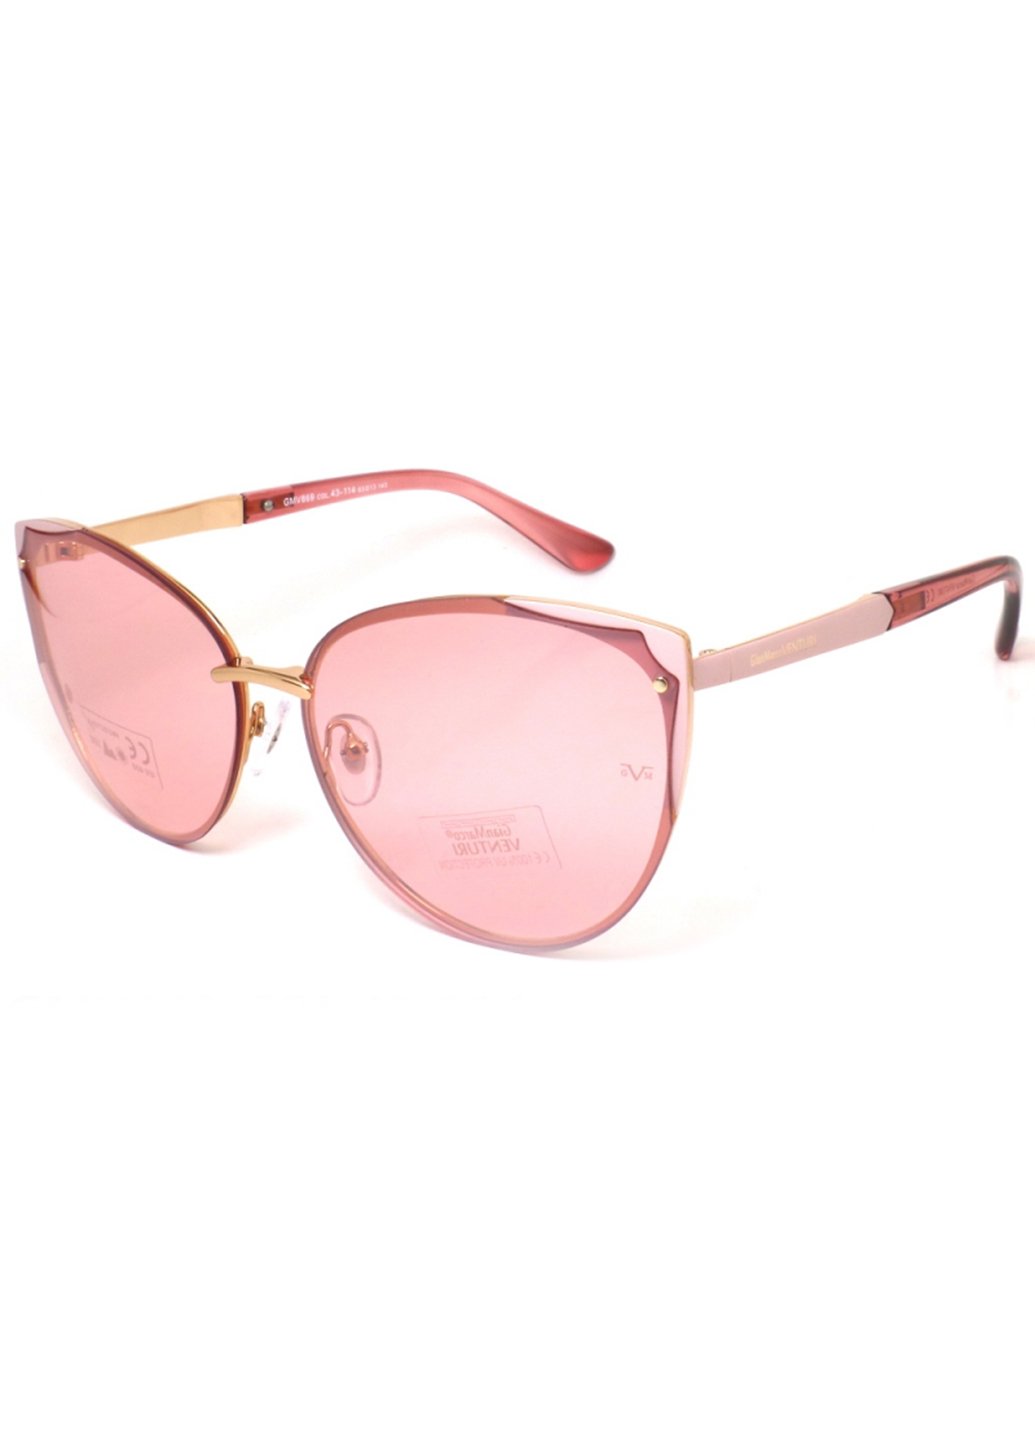 Купить Женские солнцезащитные очки Gian Marco VENTURI GMV869 130015 - Розовый в интернет-магазине